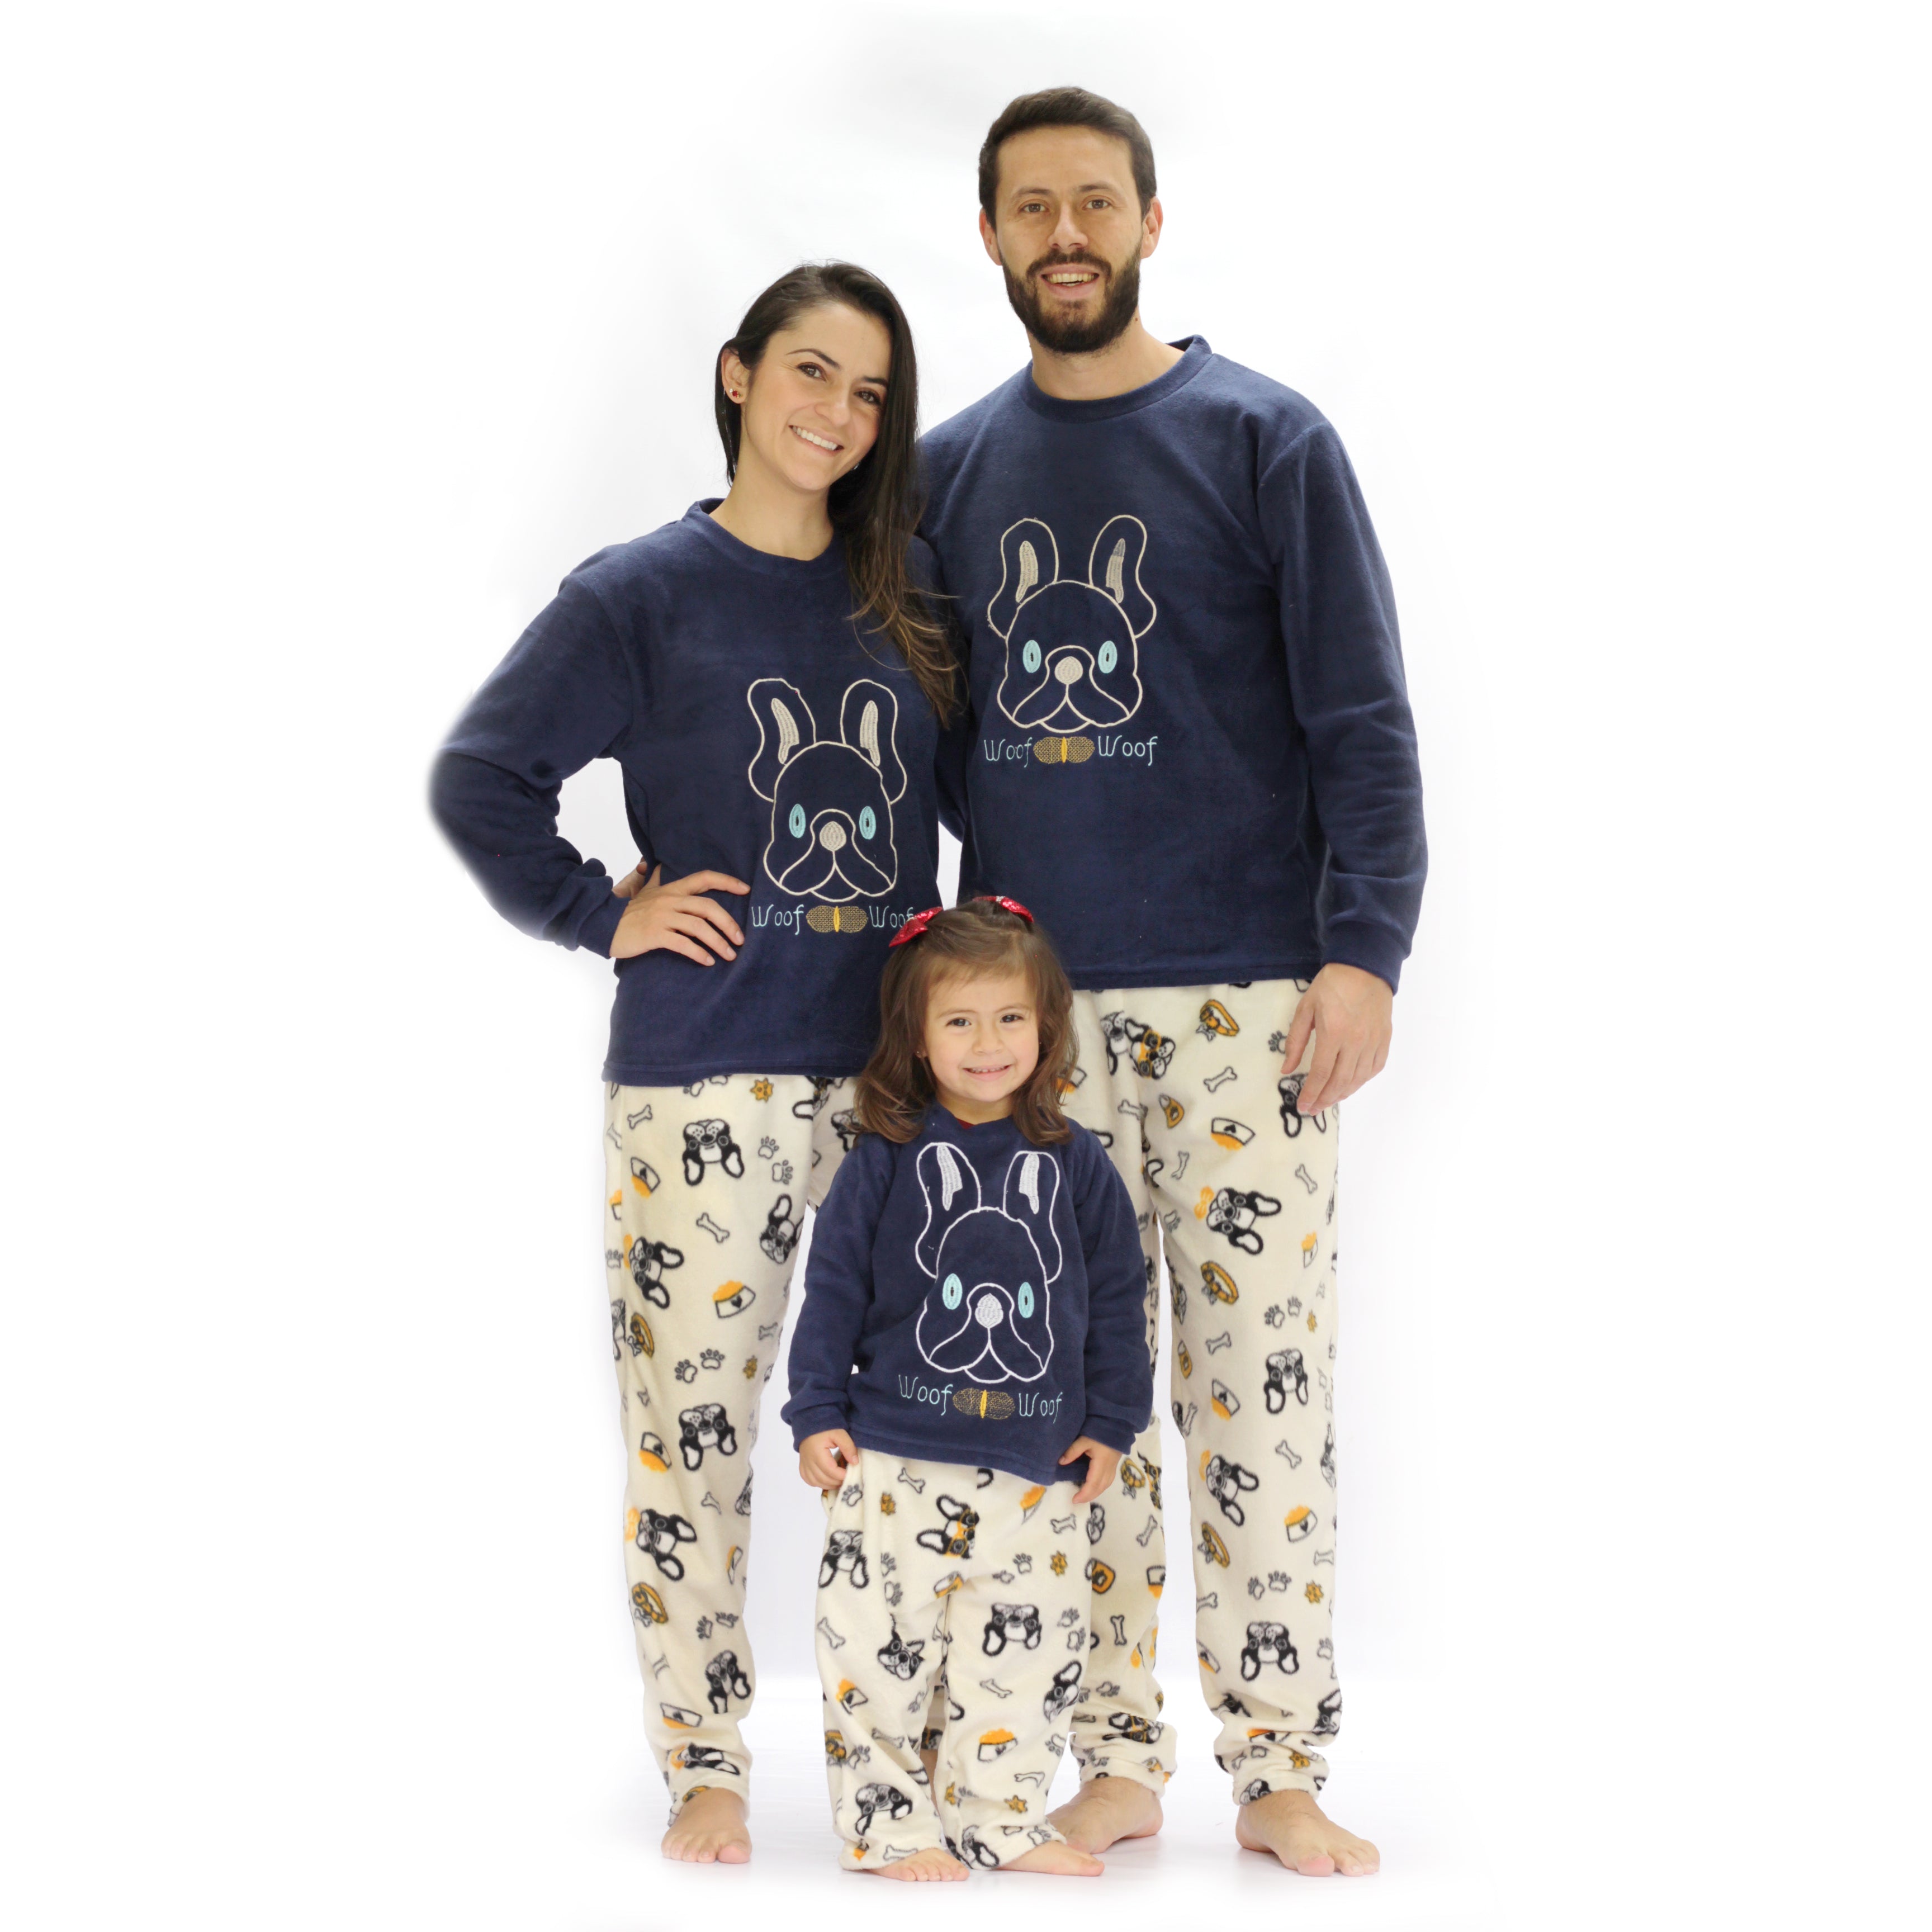 Comprar pijamas molones - Tienda online pijamas orginales